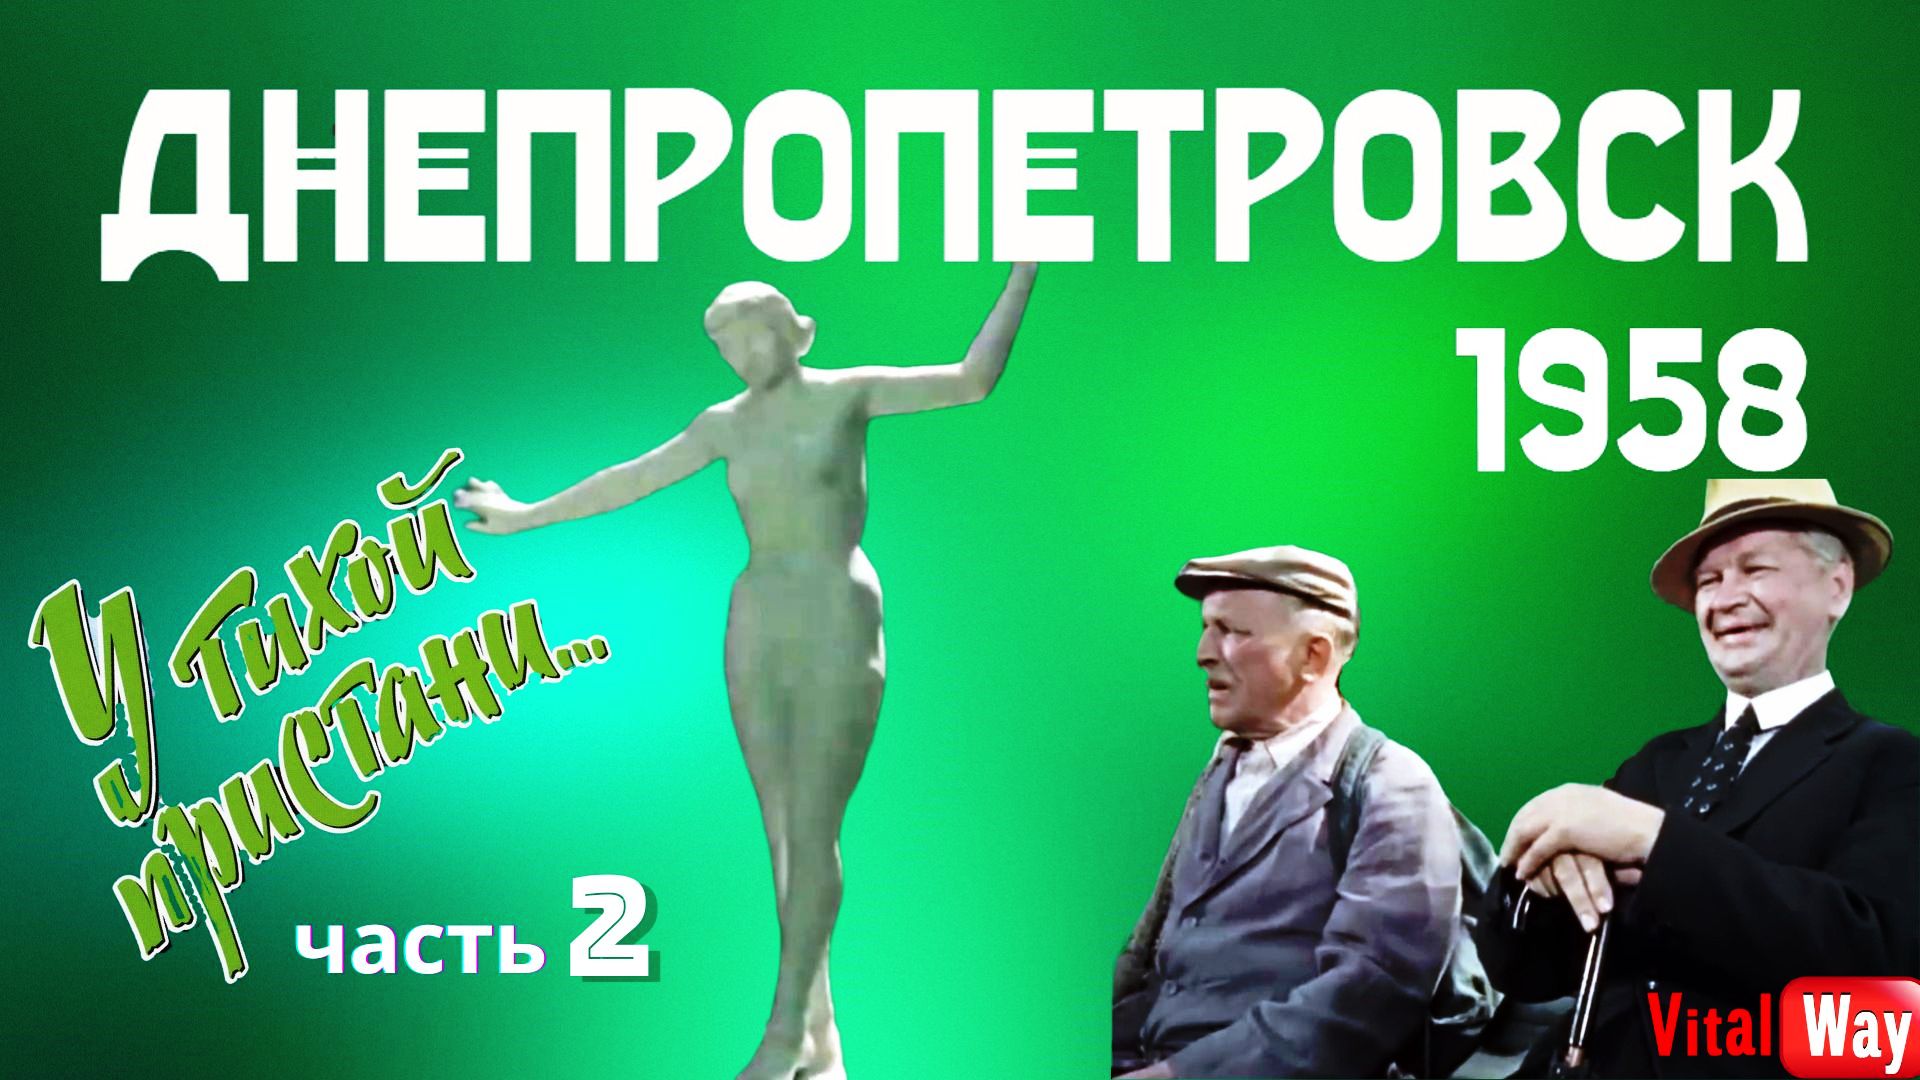 Фильм "У тихой пристани" снимали в Днепропетровске в 1958 году.